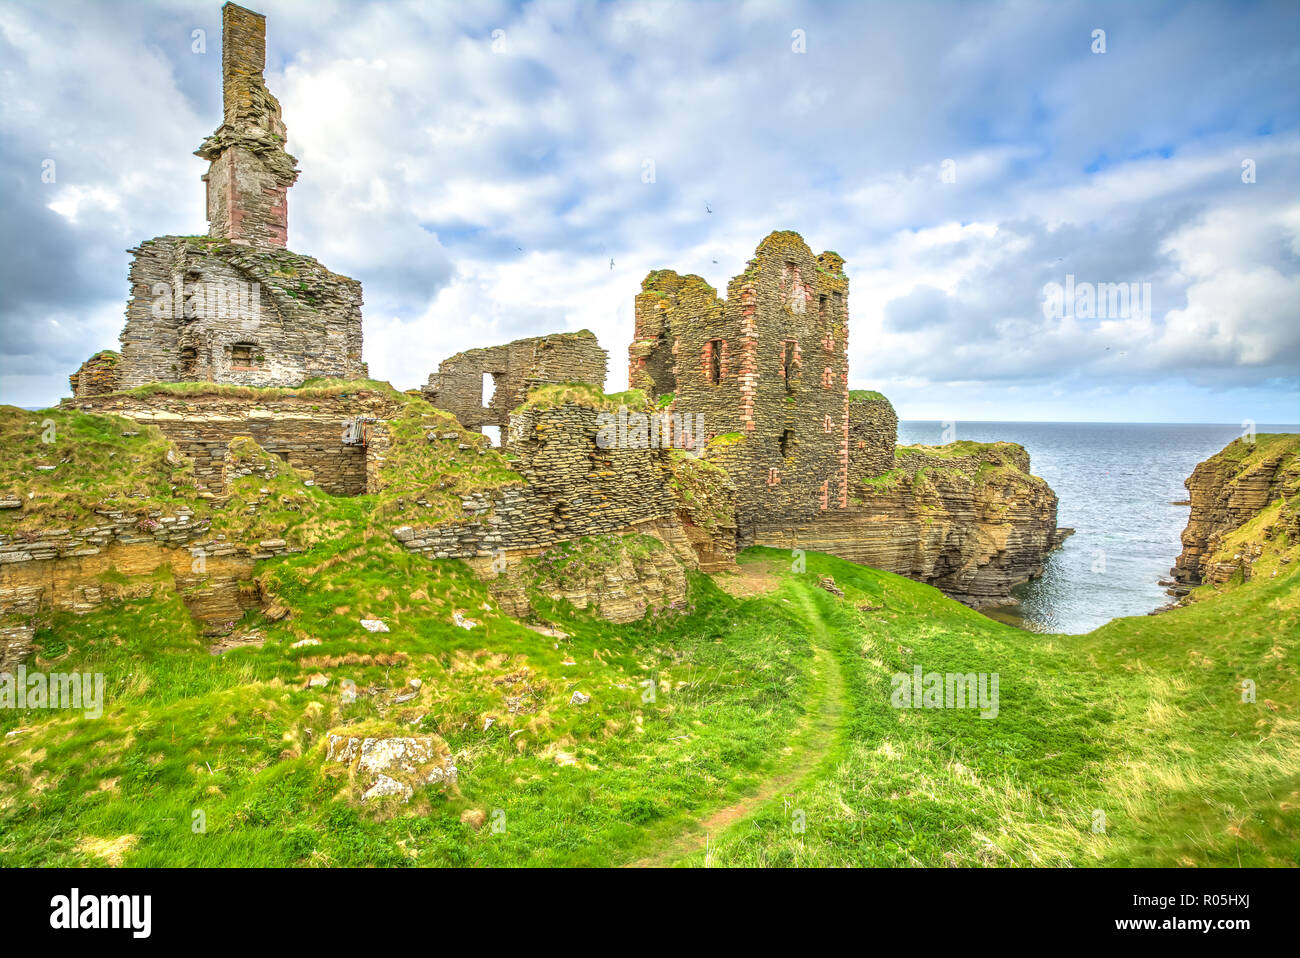 Forteresse de château écossais Sinclair Girnigoe, la ruine la plus spectaculaire dans le Nord de l'Écosse, dans les Highlands, près de Wick, sur la côte est du Caithness. Banque D'Images